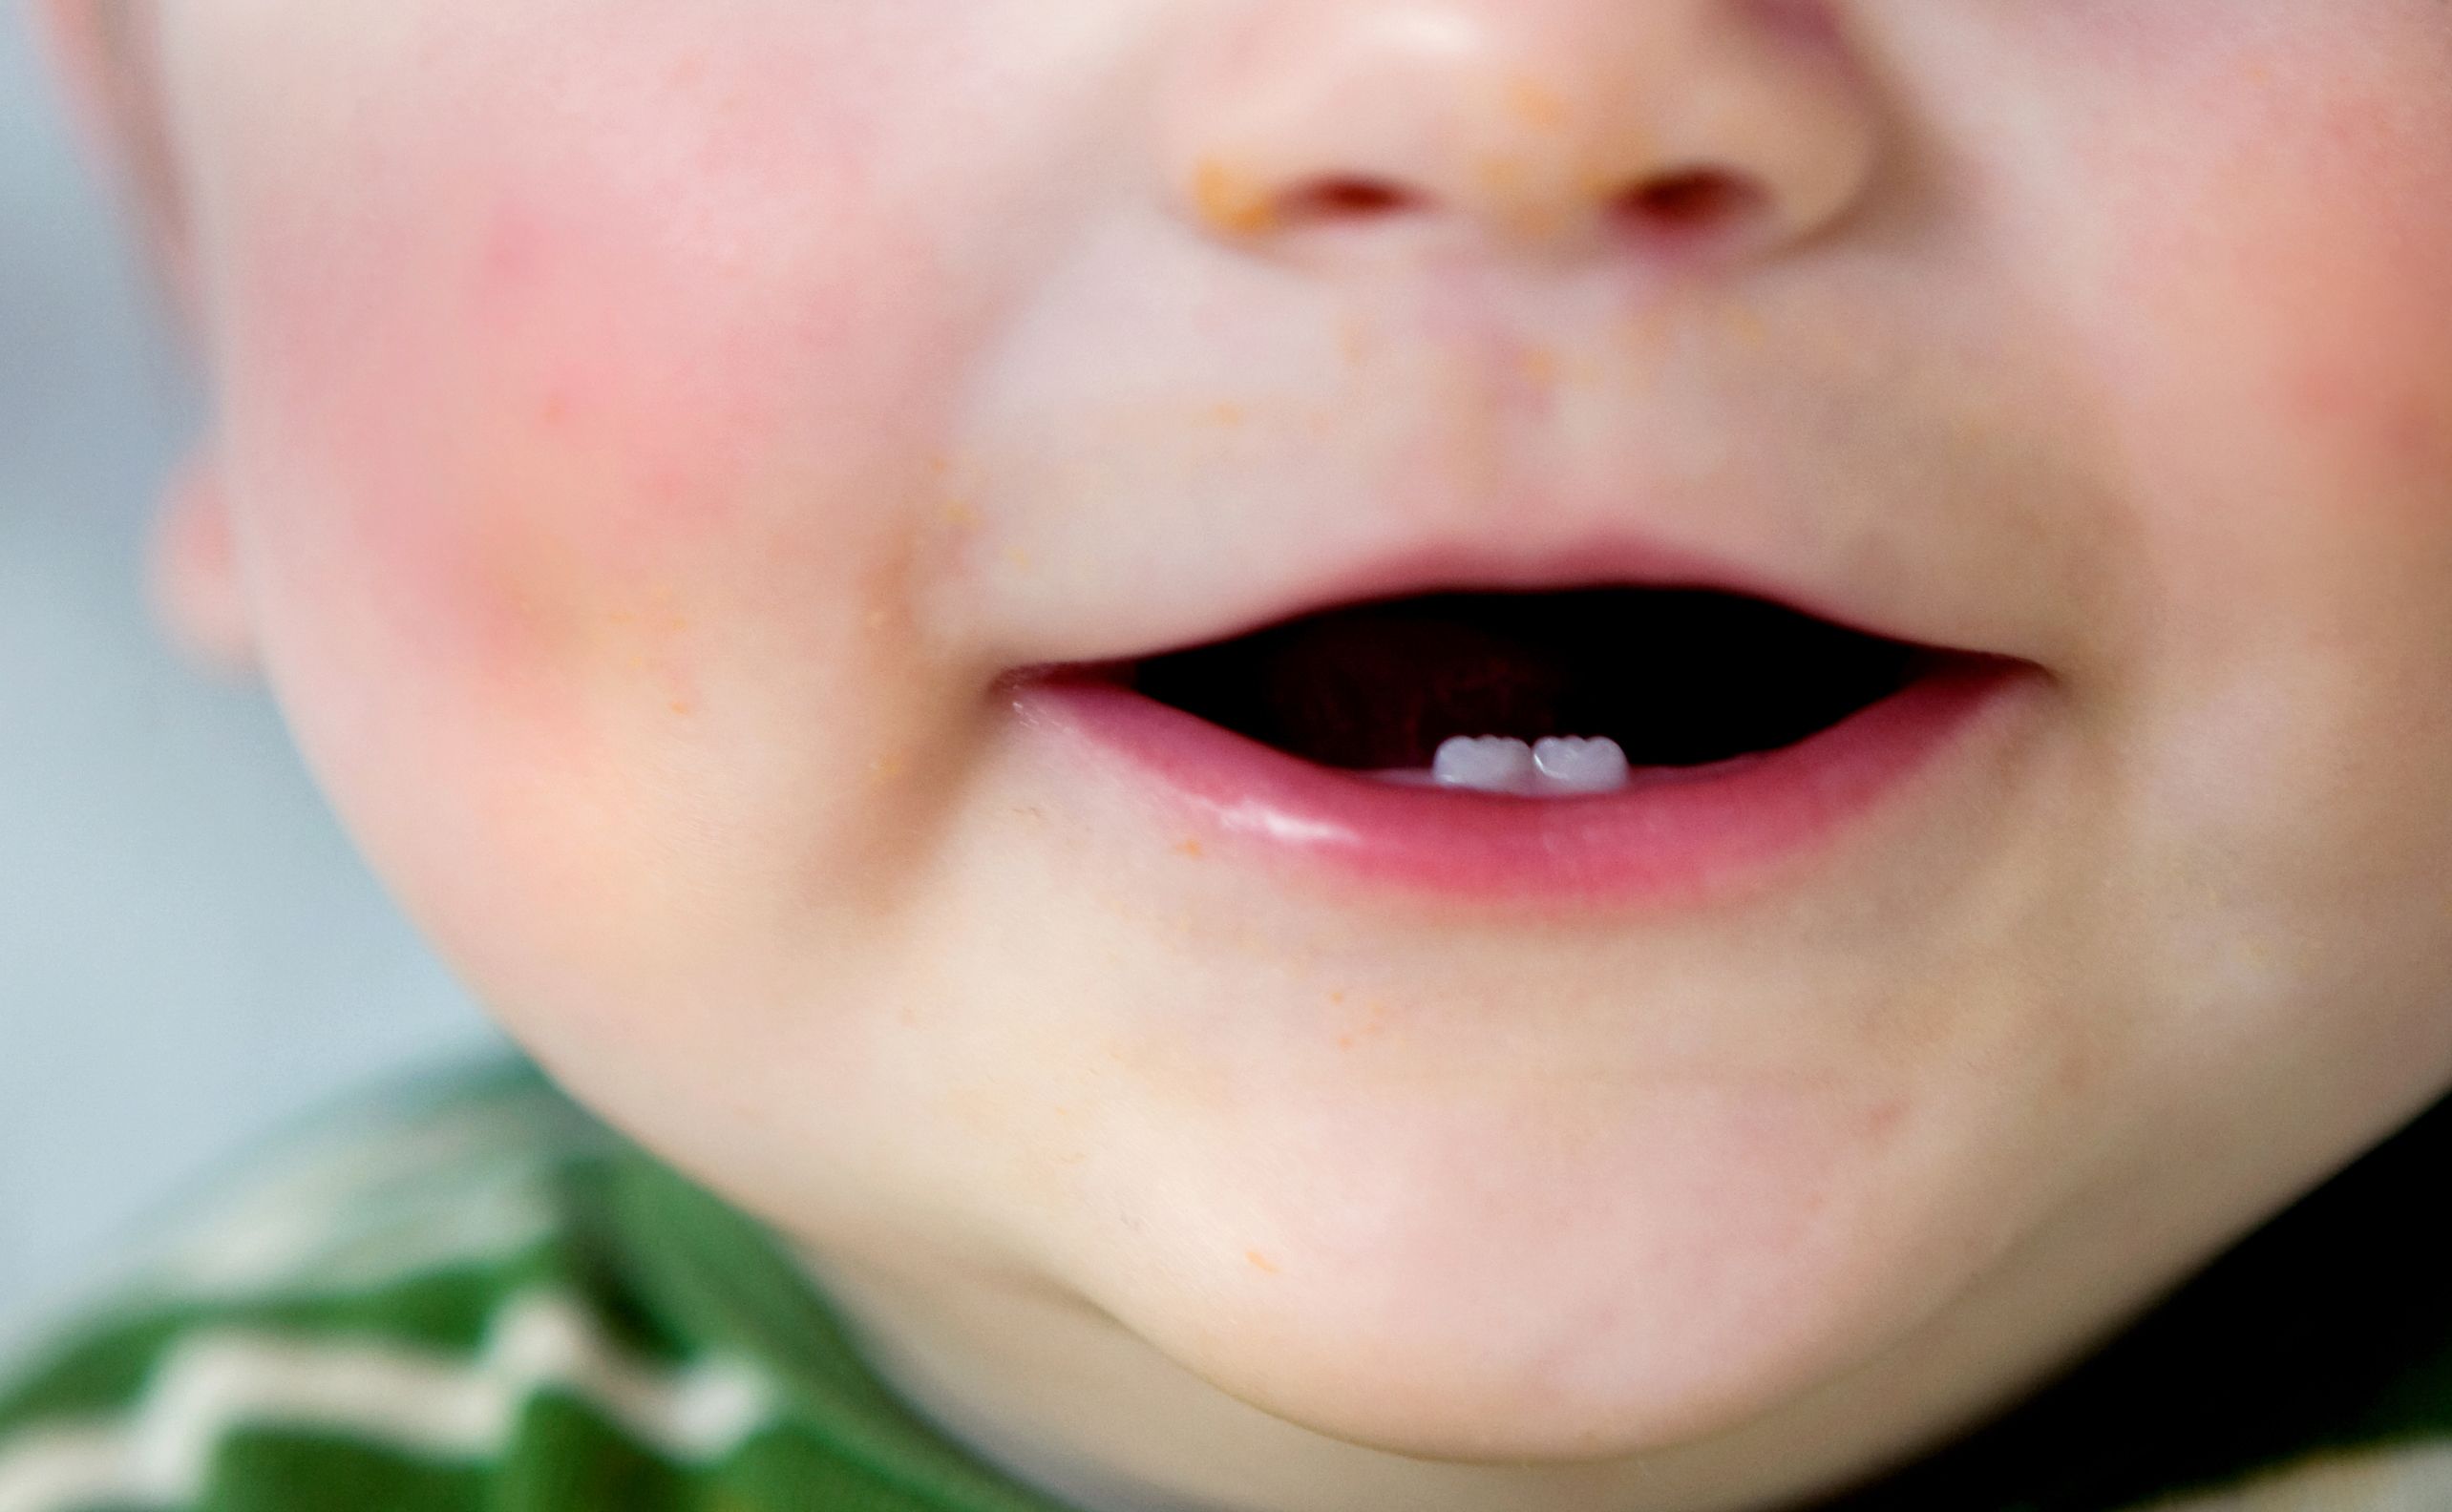 Les dents de bébé : la poussée dentaire âge par âge